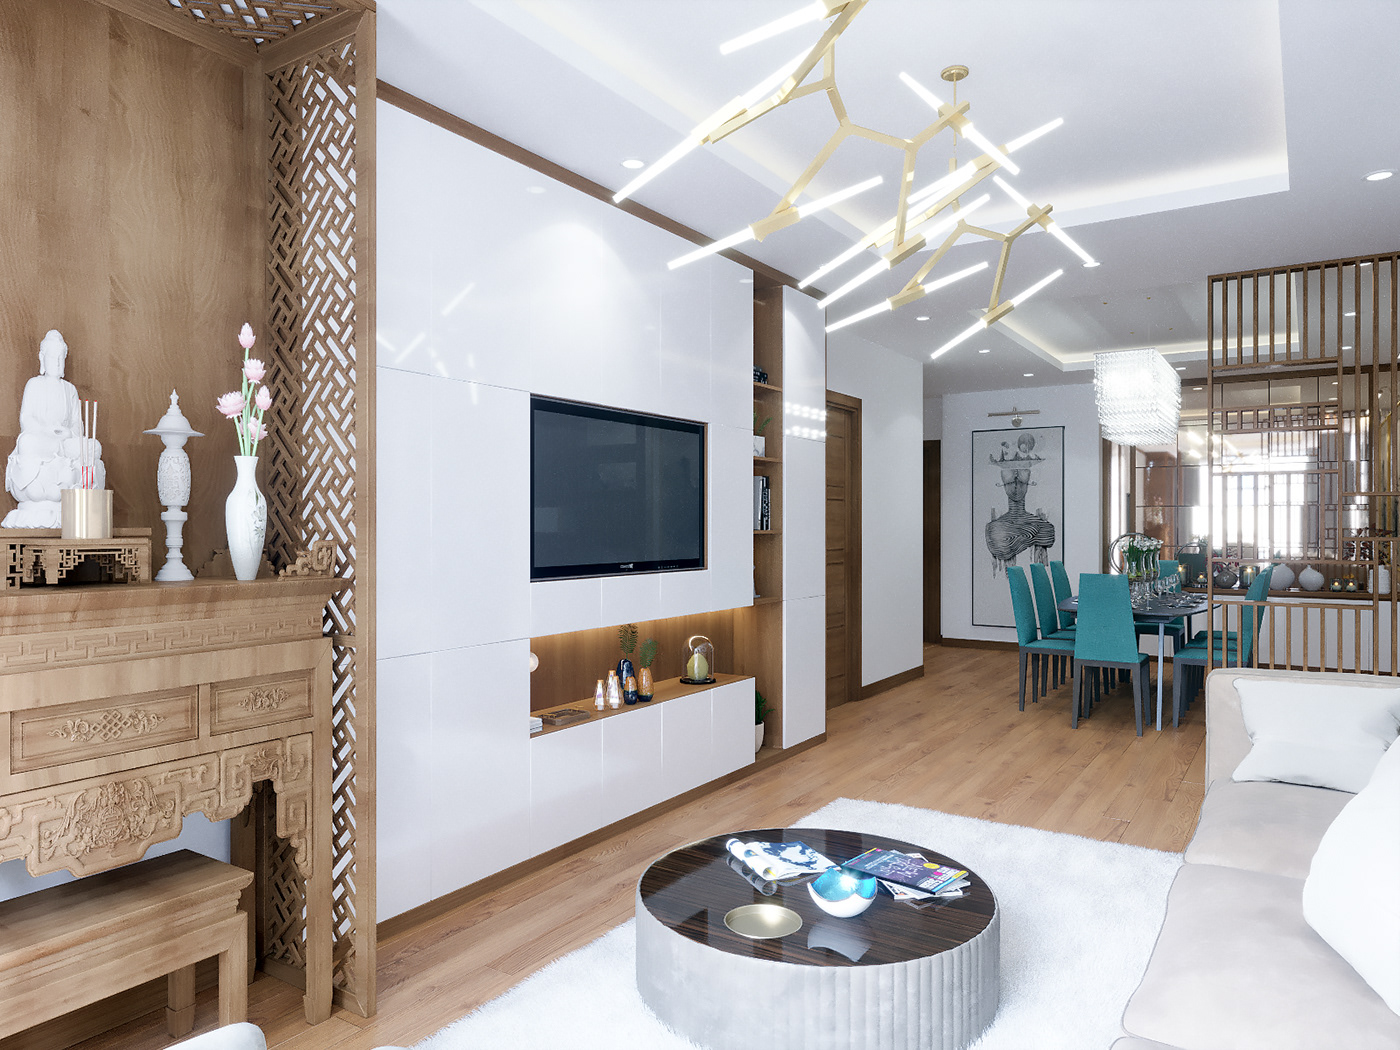 thiết kế nội thất chung cư tại Hà Nội Thiết kế nội thất căn hộ E4 12 1537930148